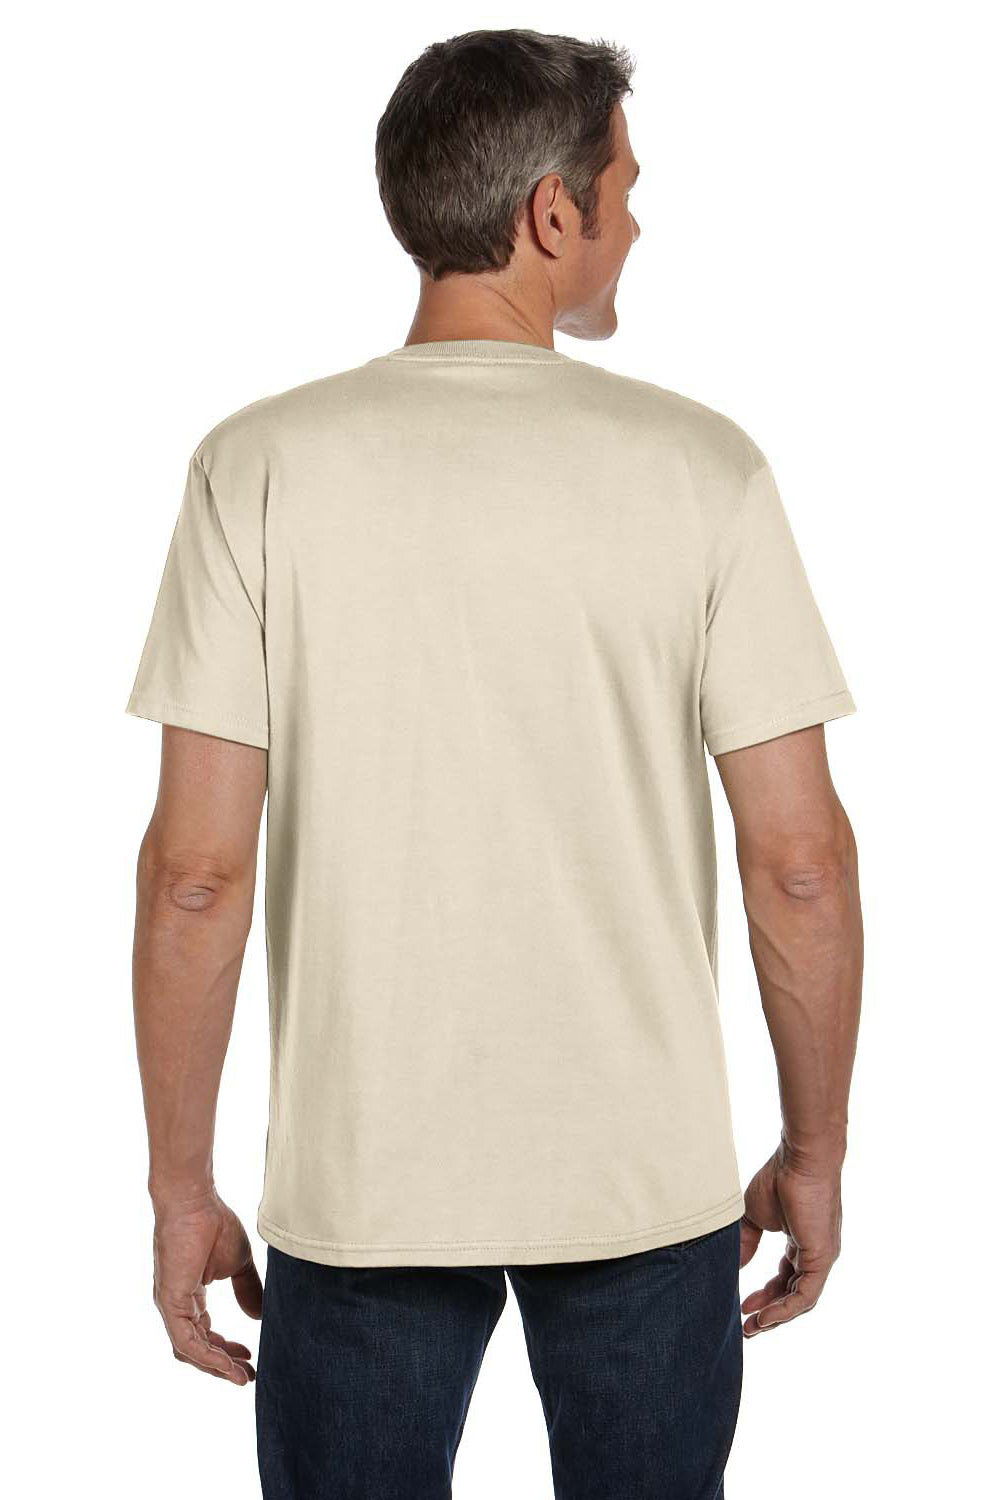 Econscious EC1000 Mens Short Sleeve Crewneck T-Shirt Natural Back